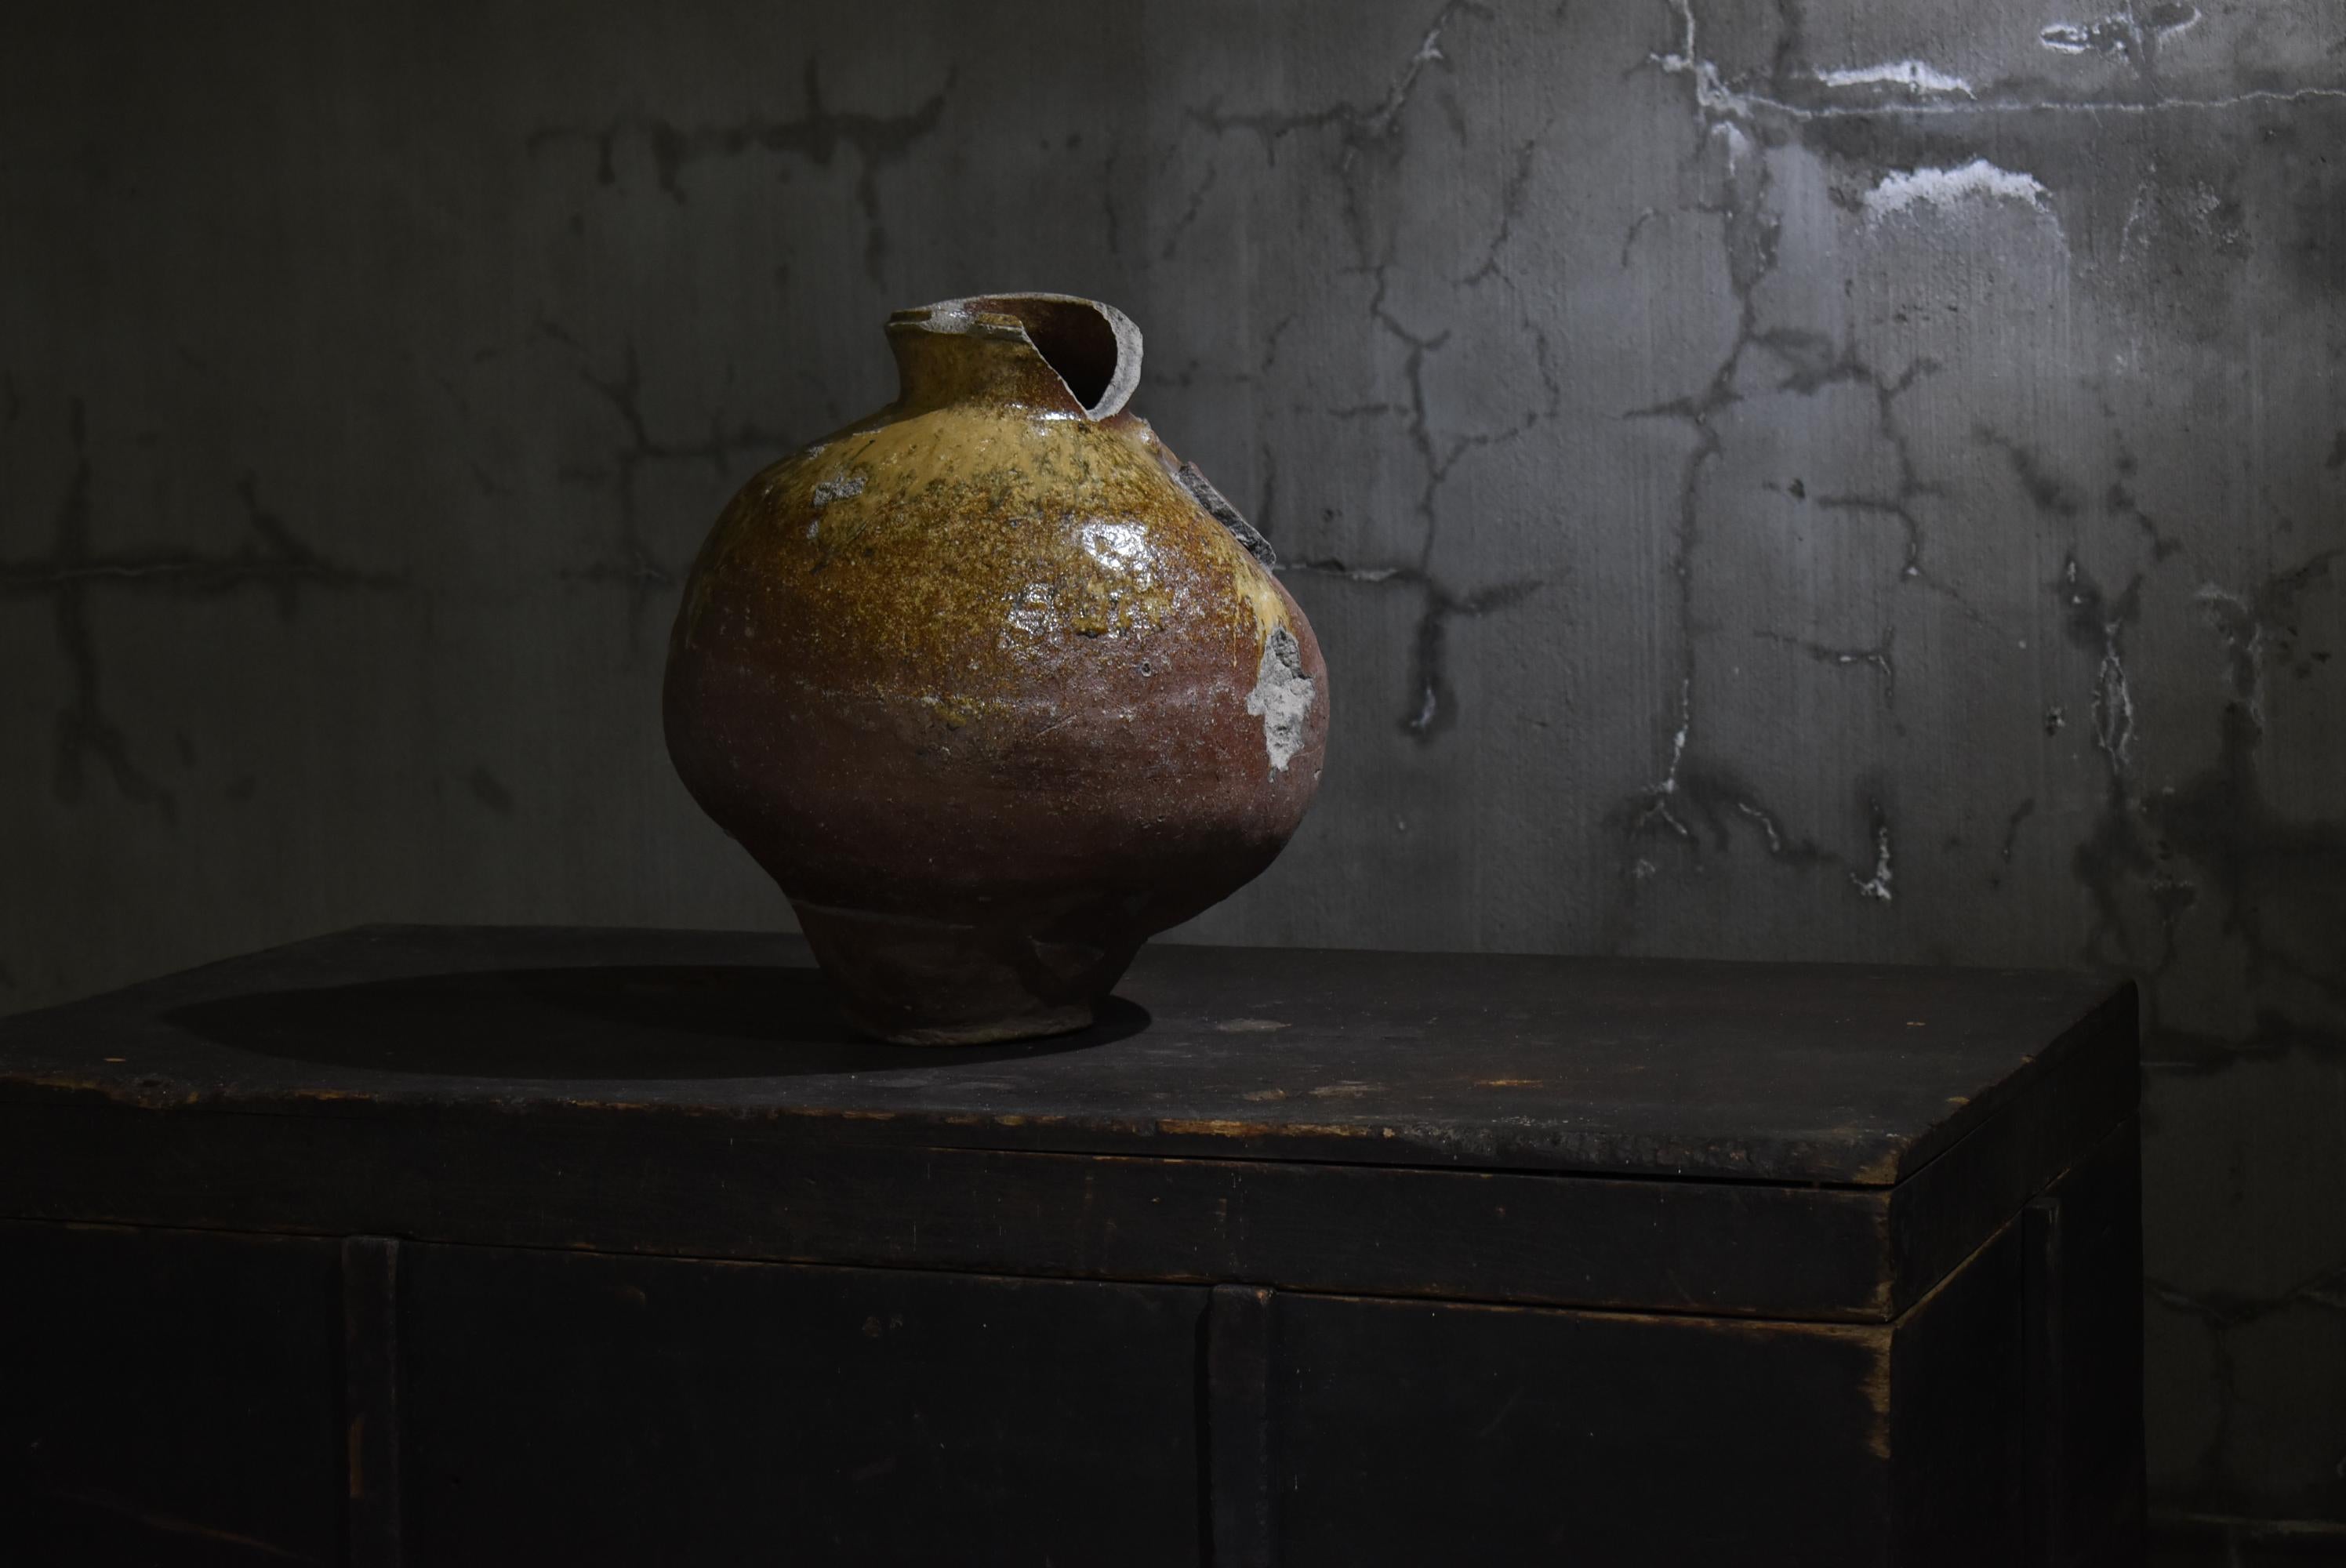 Edo Japanese Antique Wabi Sabi Pottery Vase 1600s-1700s / Flower Vase Vessel Tsubo